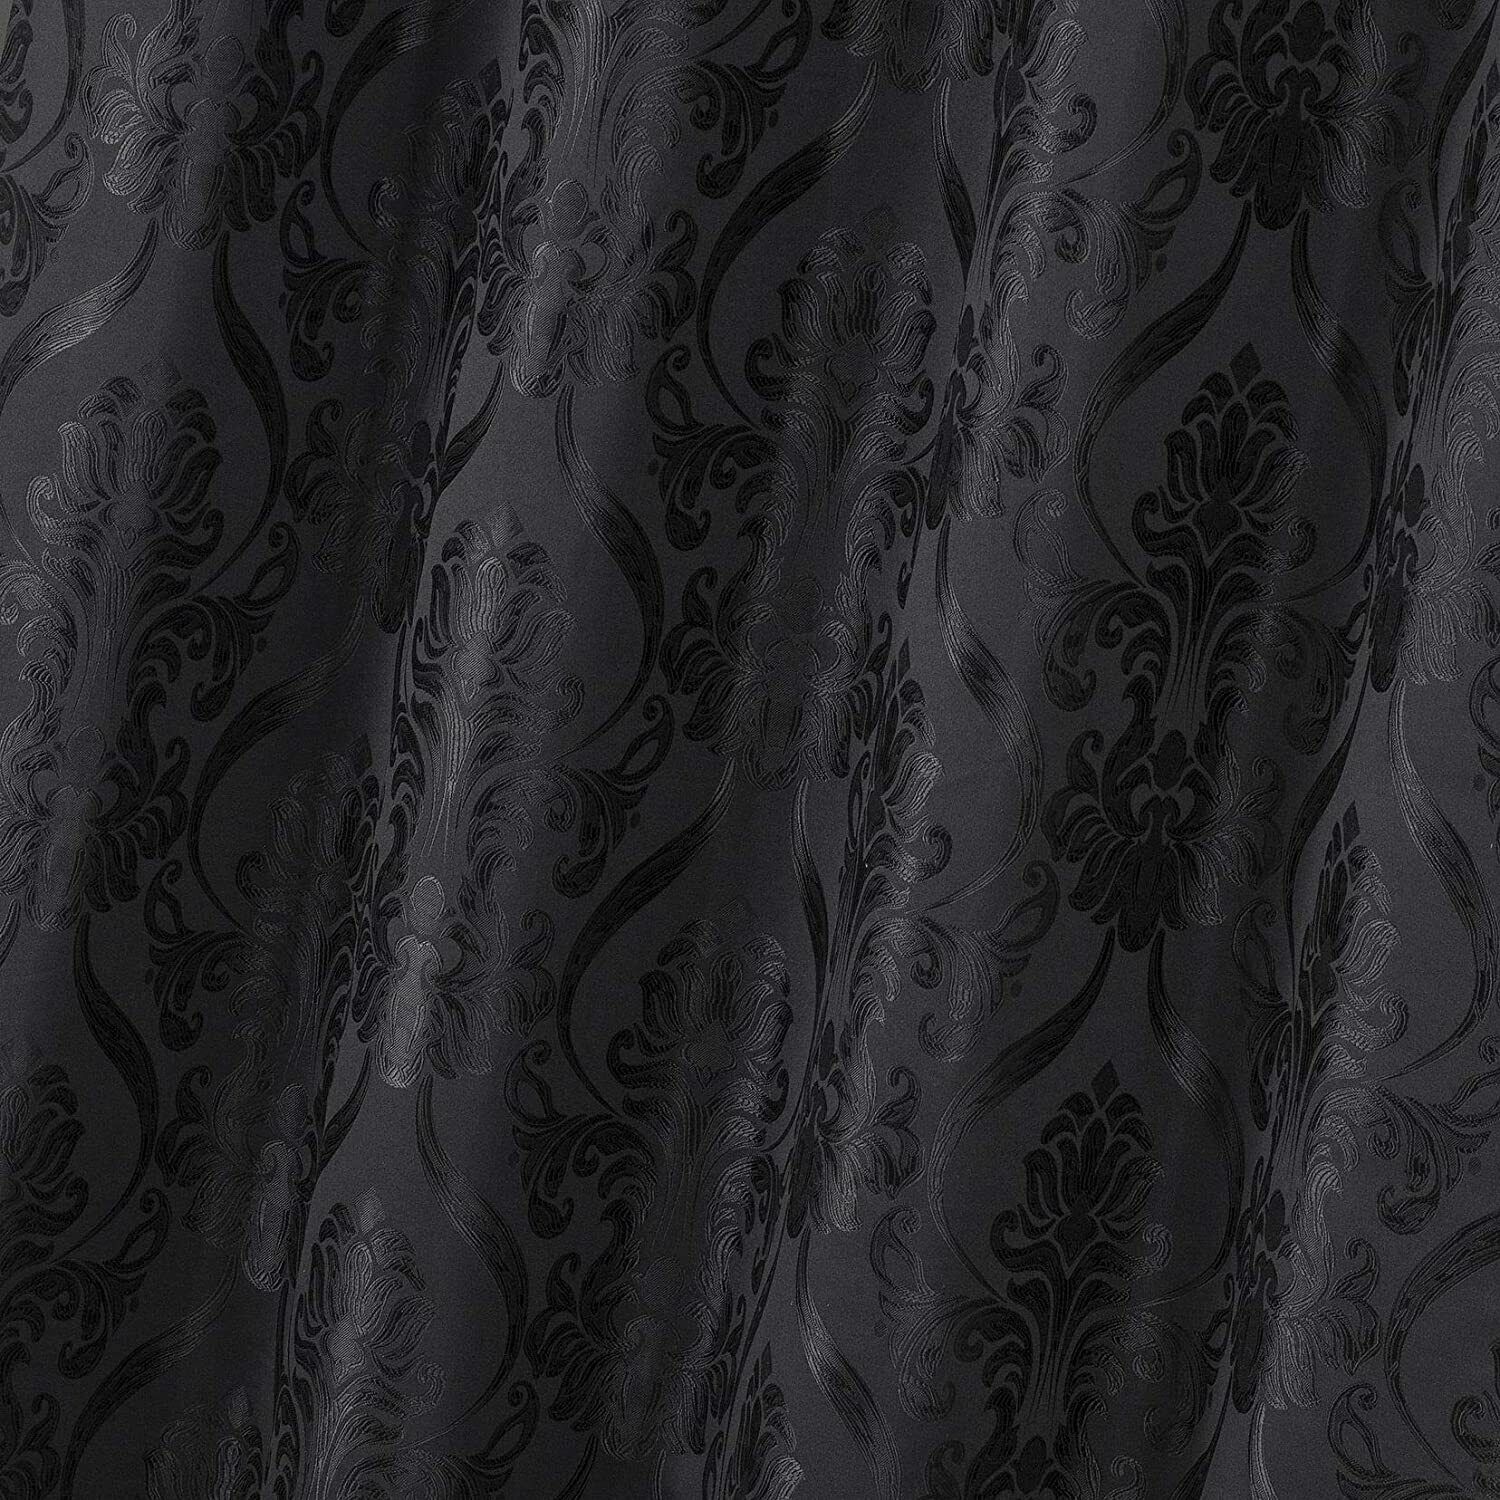 Set 2 Solid Black Fringe Damask Curtains Panels Drapes Valance 63 84 96 inch L Ograniczona ilość, wybuchowy zakup